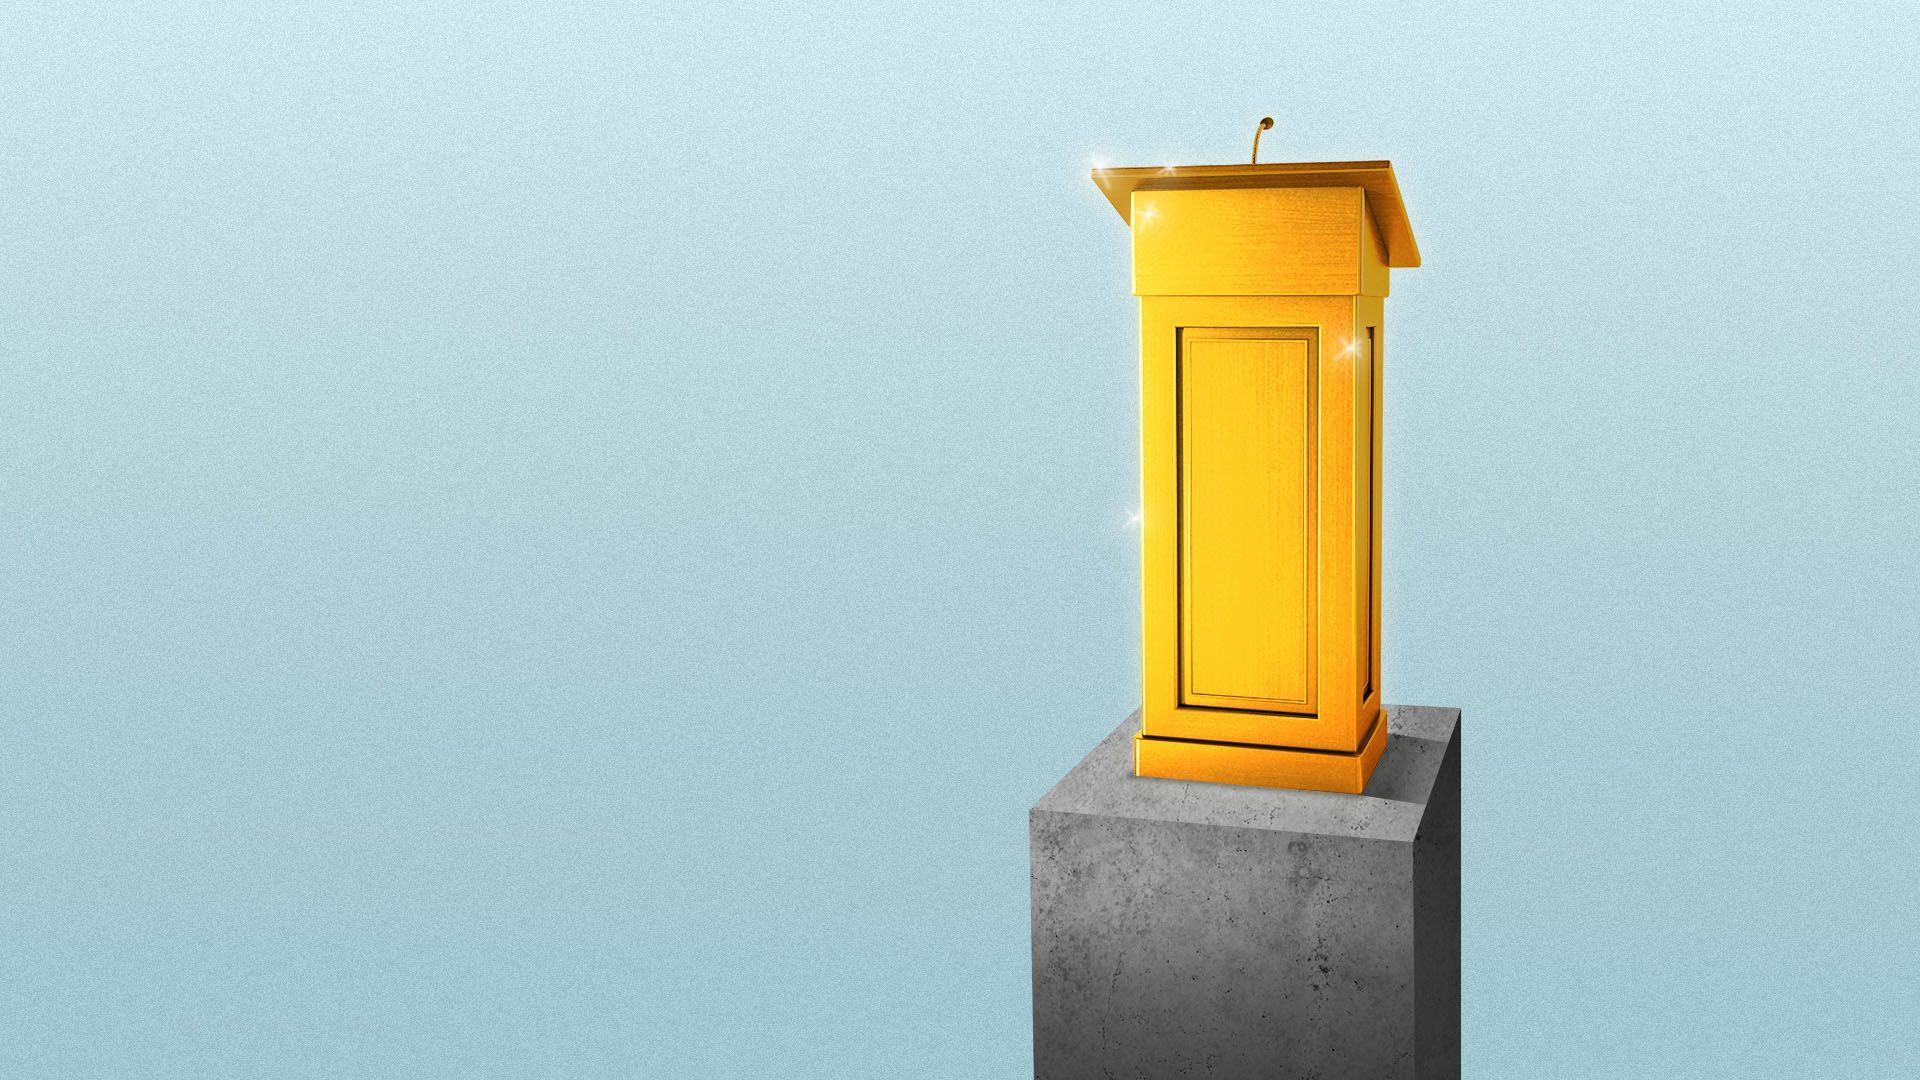 Illustration of a golden podium on a pedestal